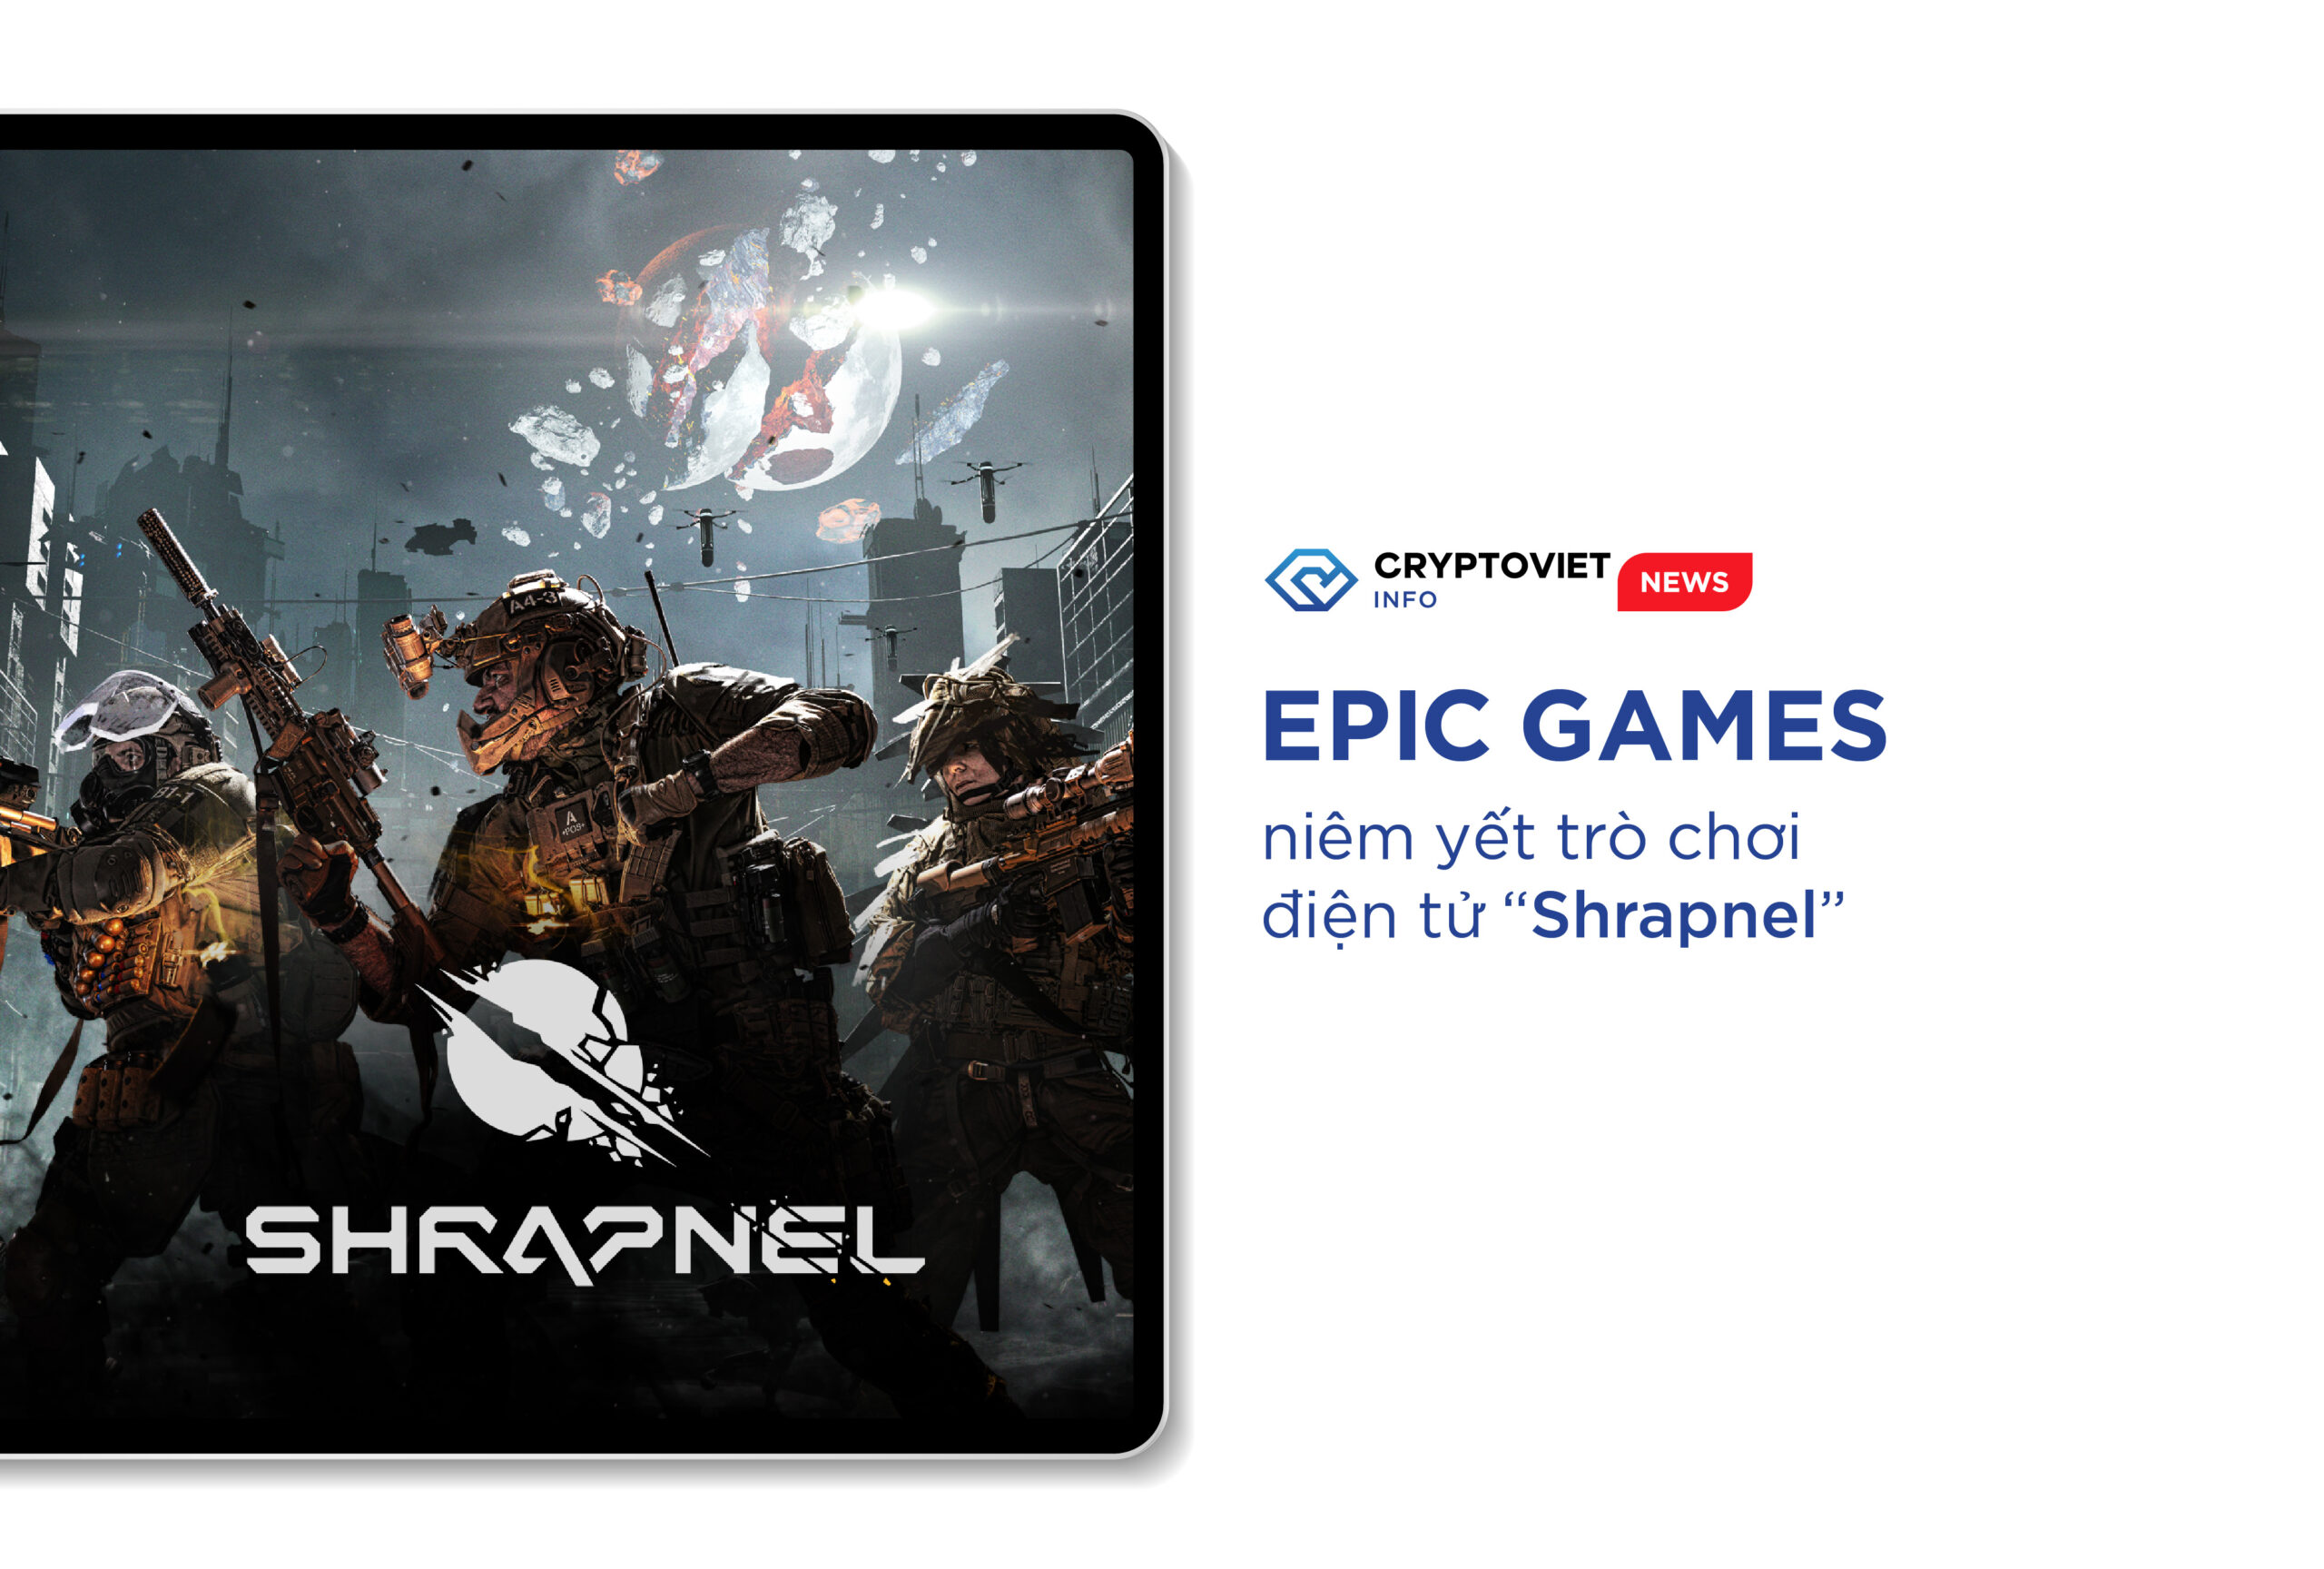 Epic Games niêm yết trò chơi điện tử "Shrapnel"